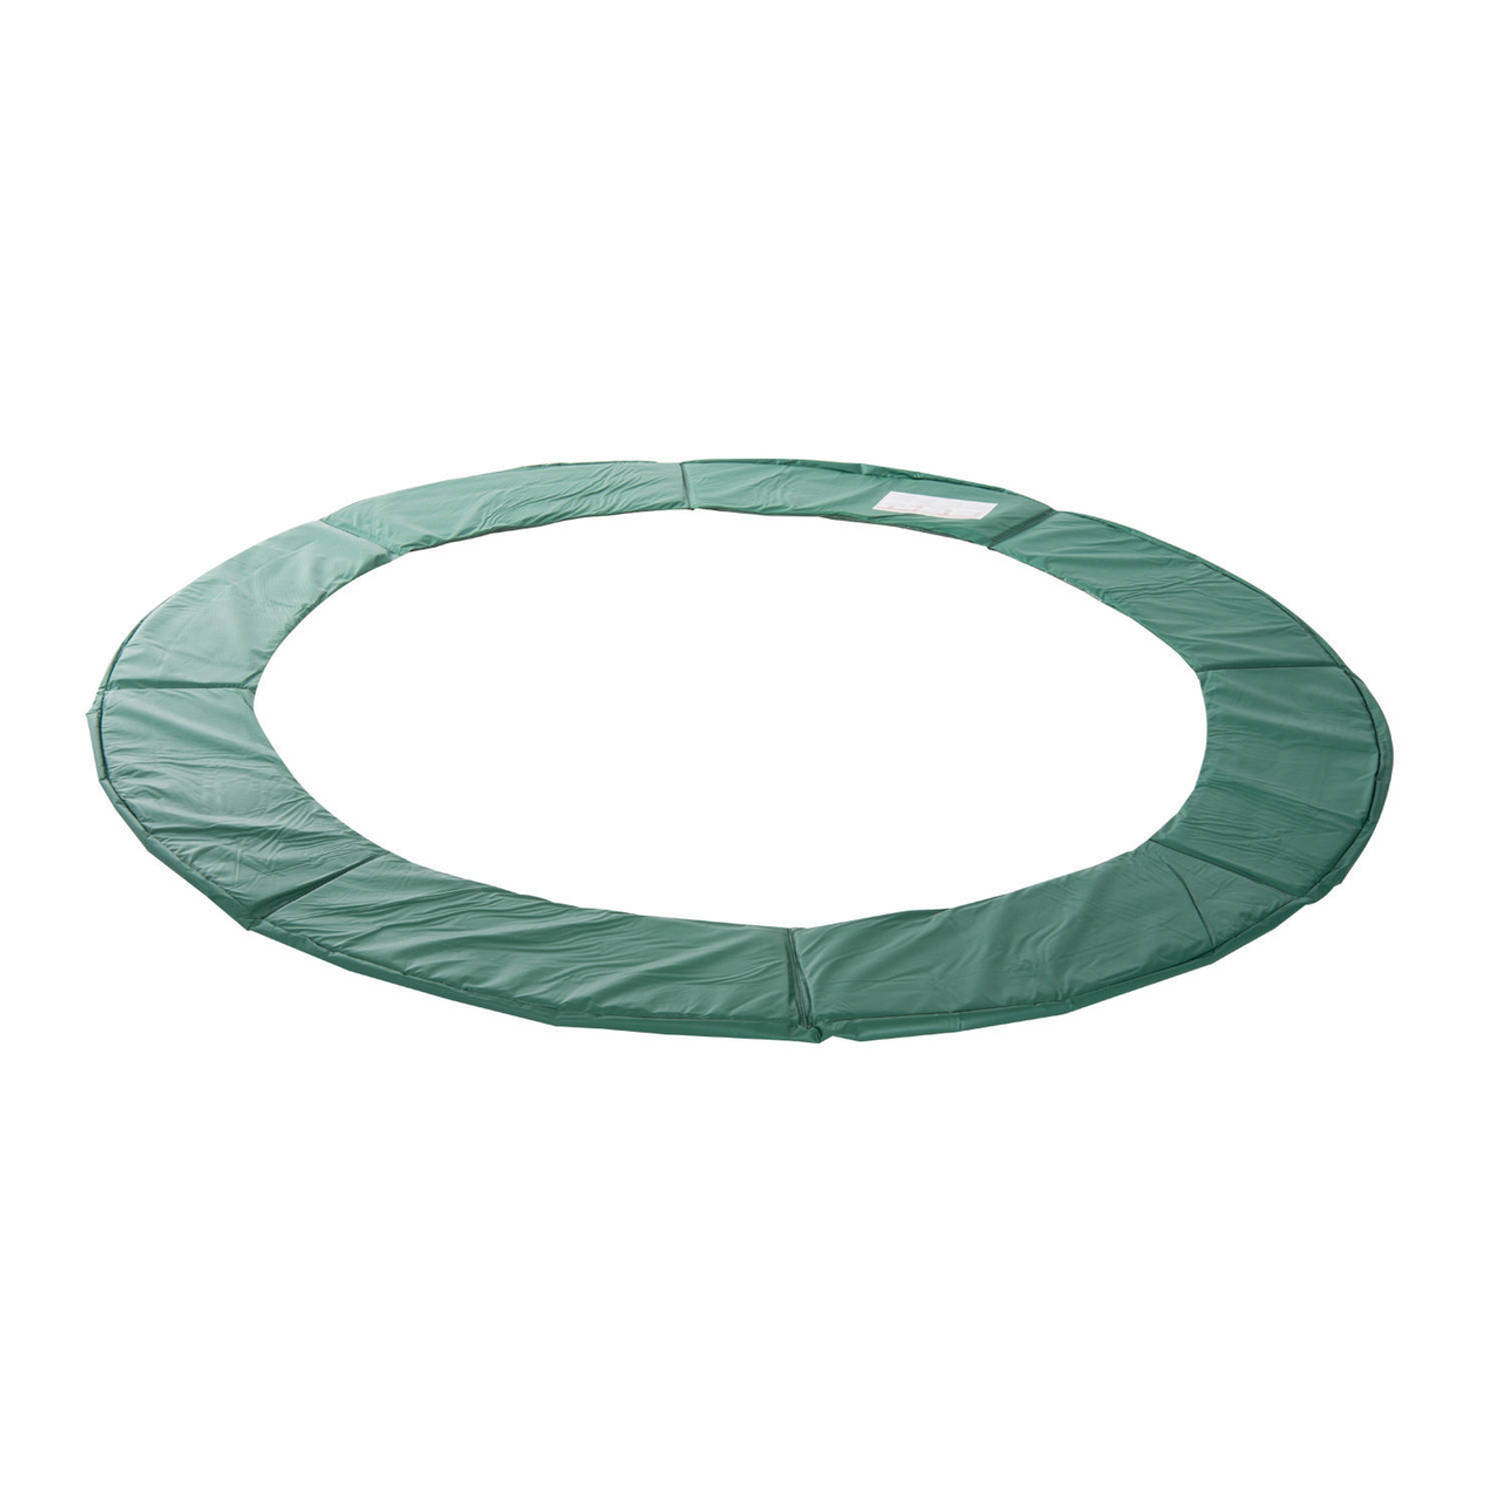 Trampoline rand afdekking - Trampoline beschermrand - 244 cm - Groen